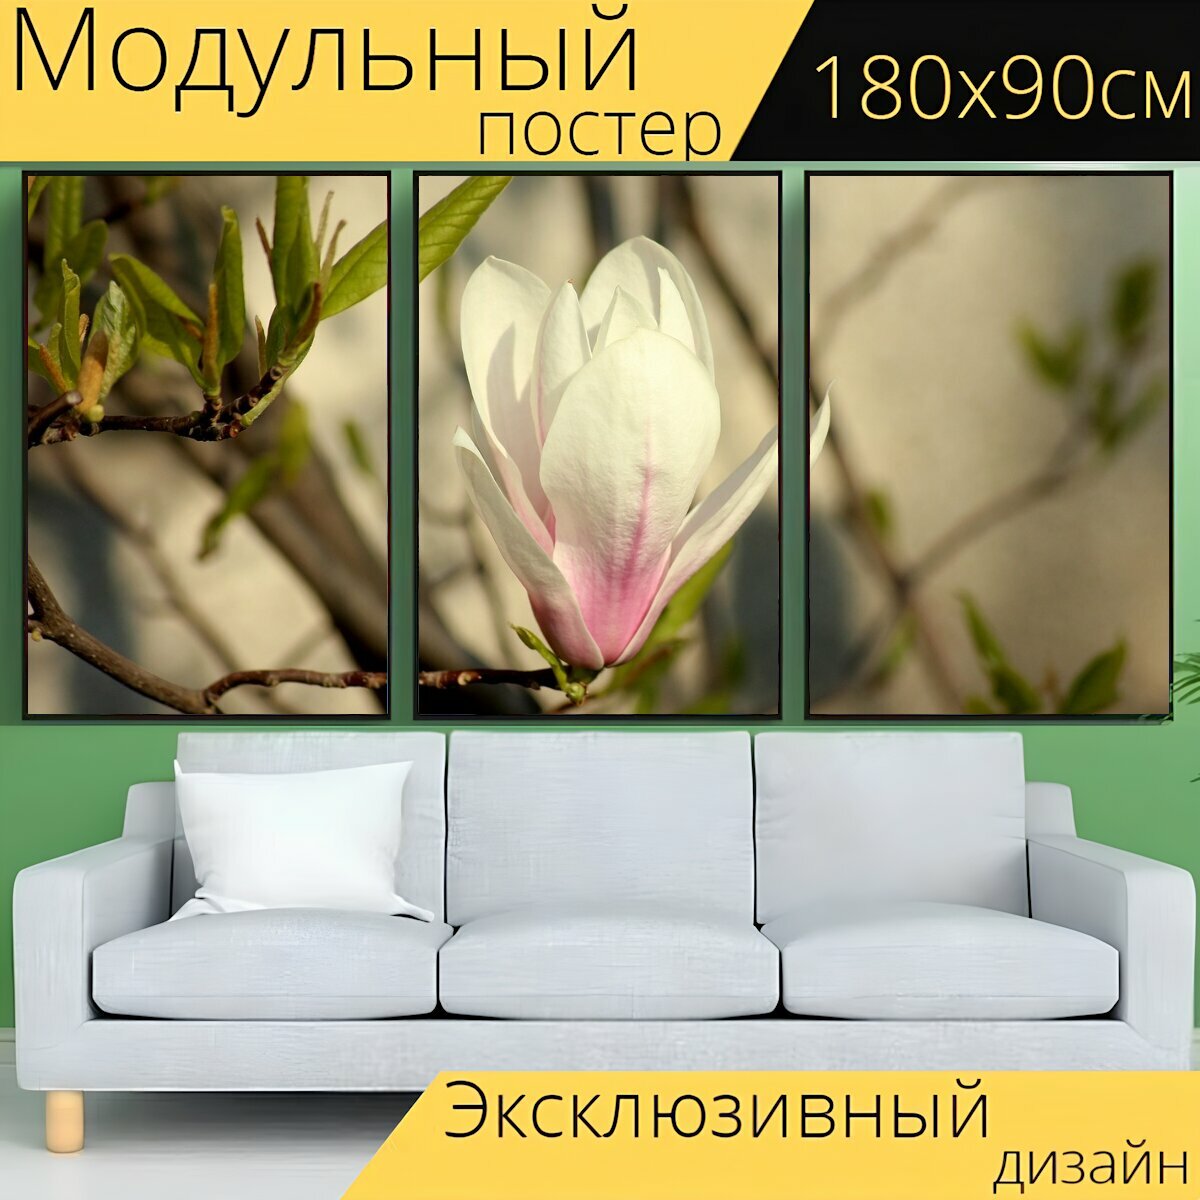 Модульный постер "Магнолия, цветок магнолии, весна" 180 x 90 см. для интерьера